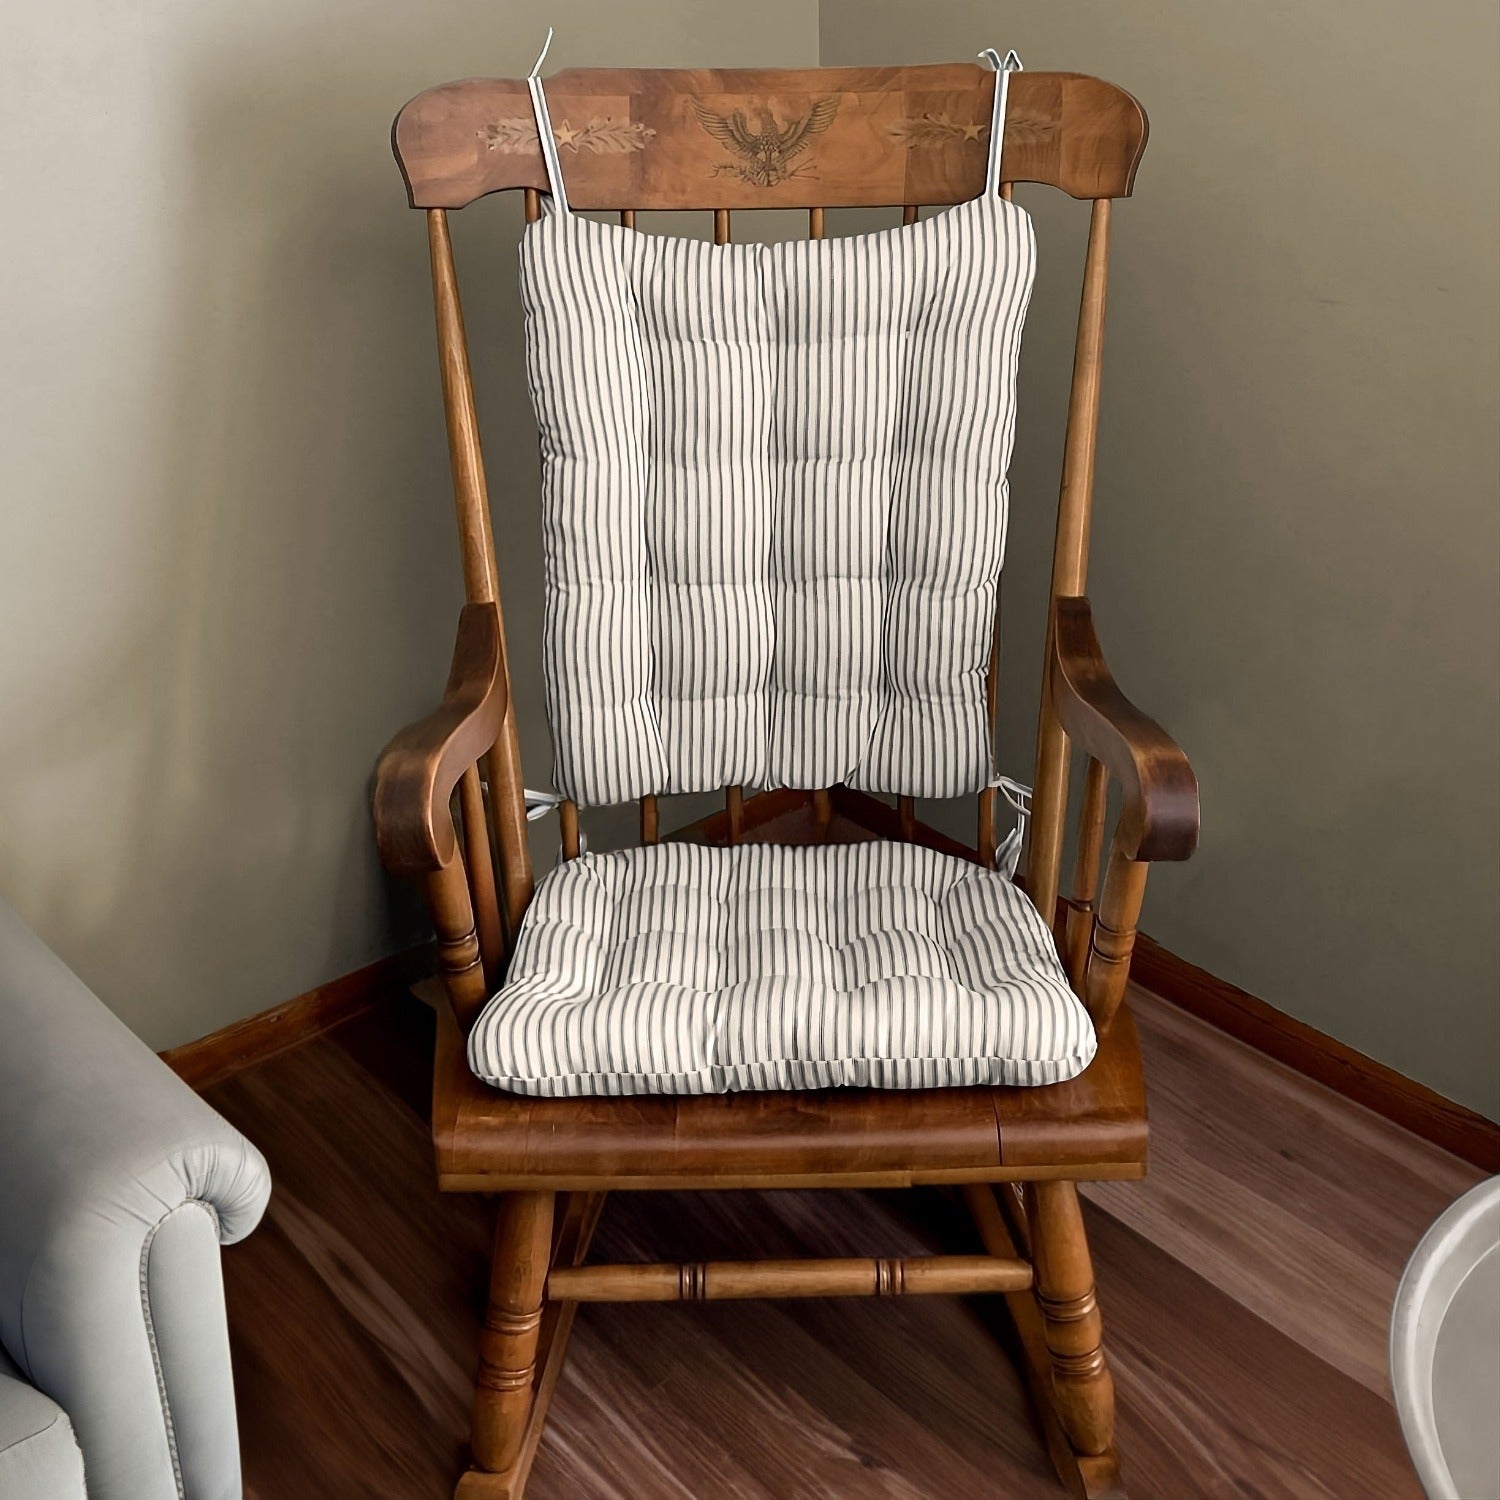 Handmade Cotton Chair Pads Cushion 19''x19'' - 3'' Thick